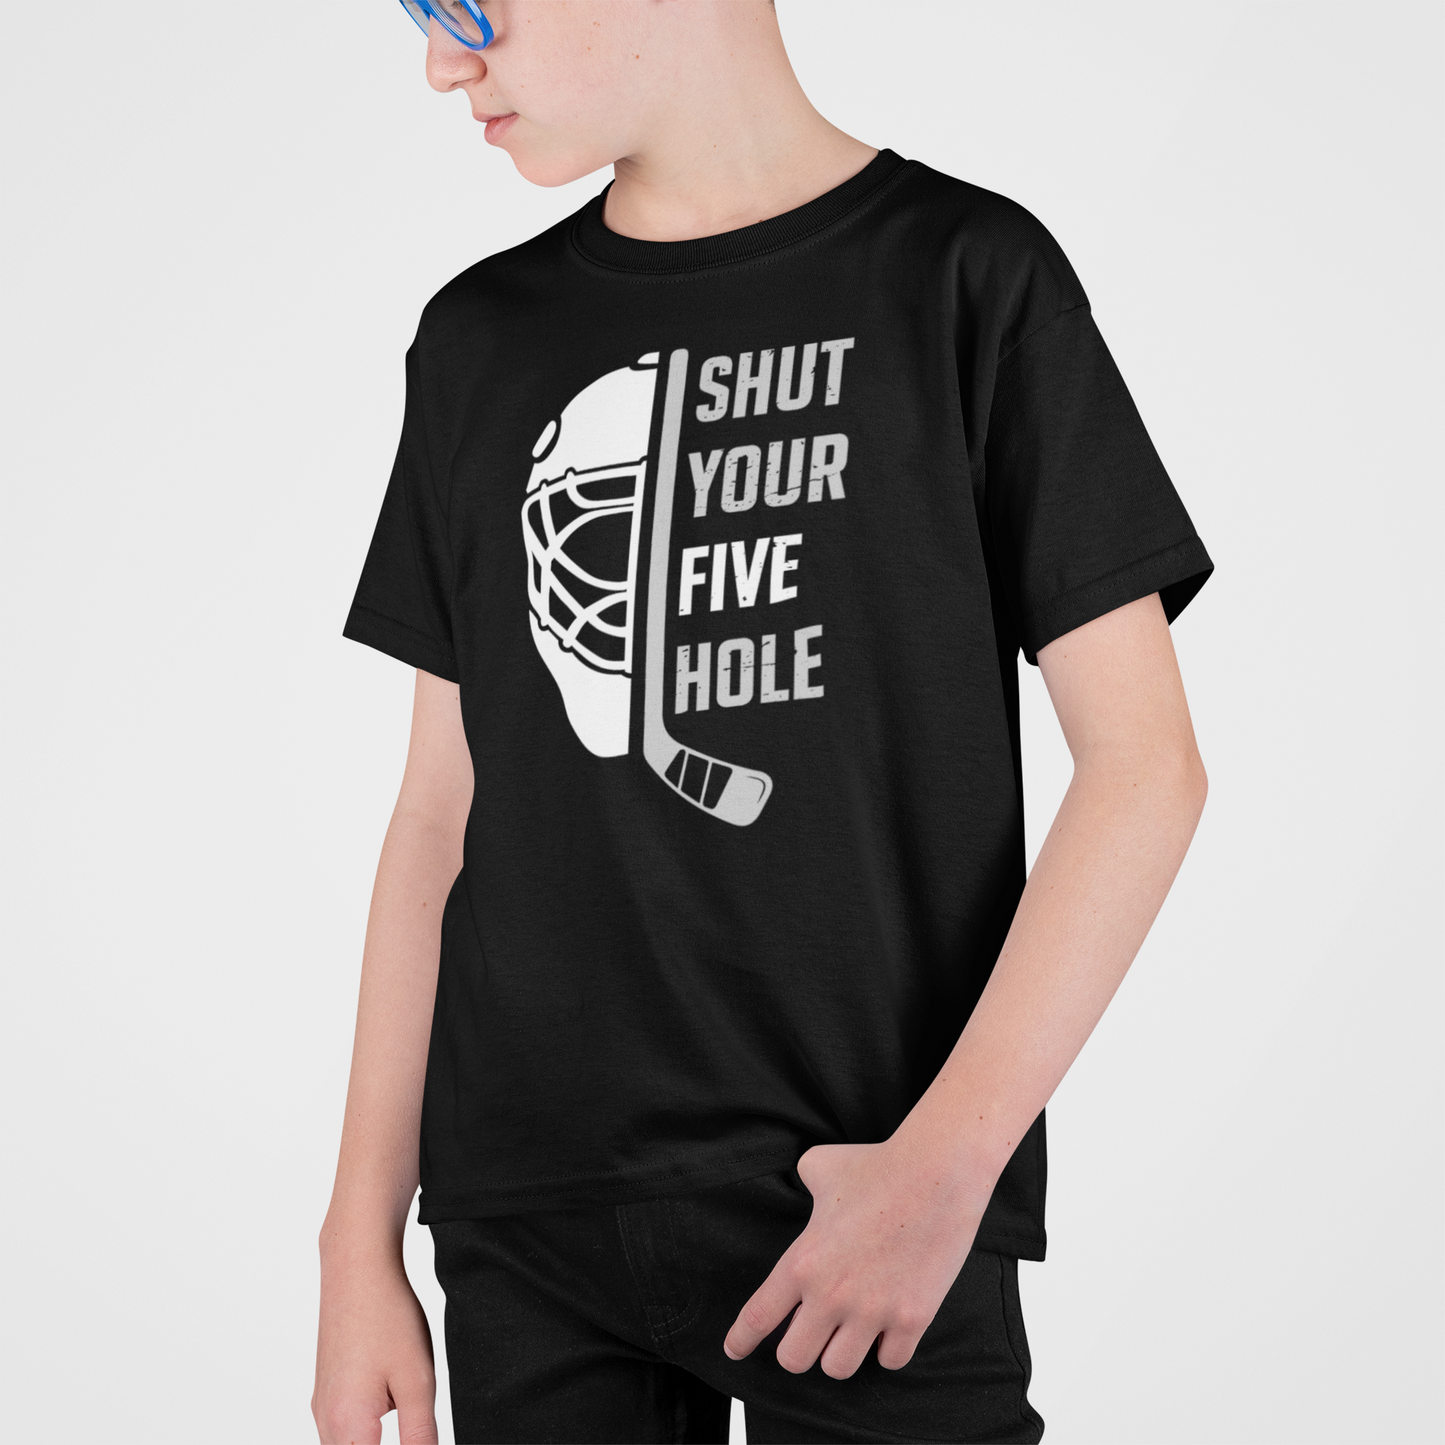 Shut Your Five Hole - Kids T-Shirt